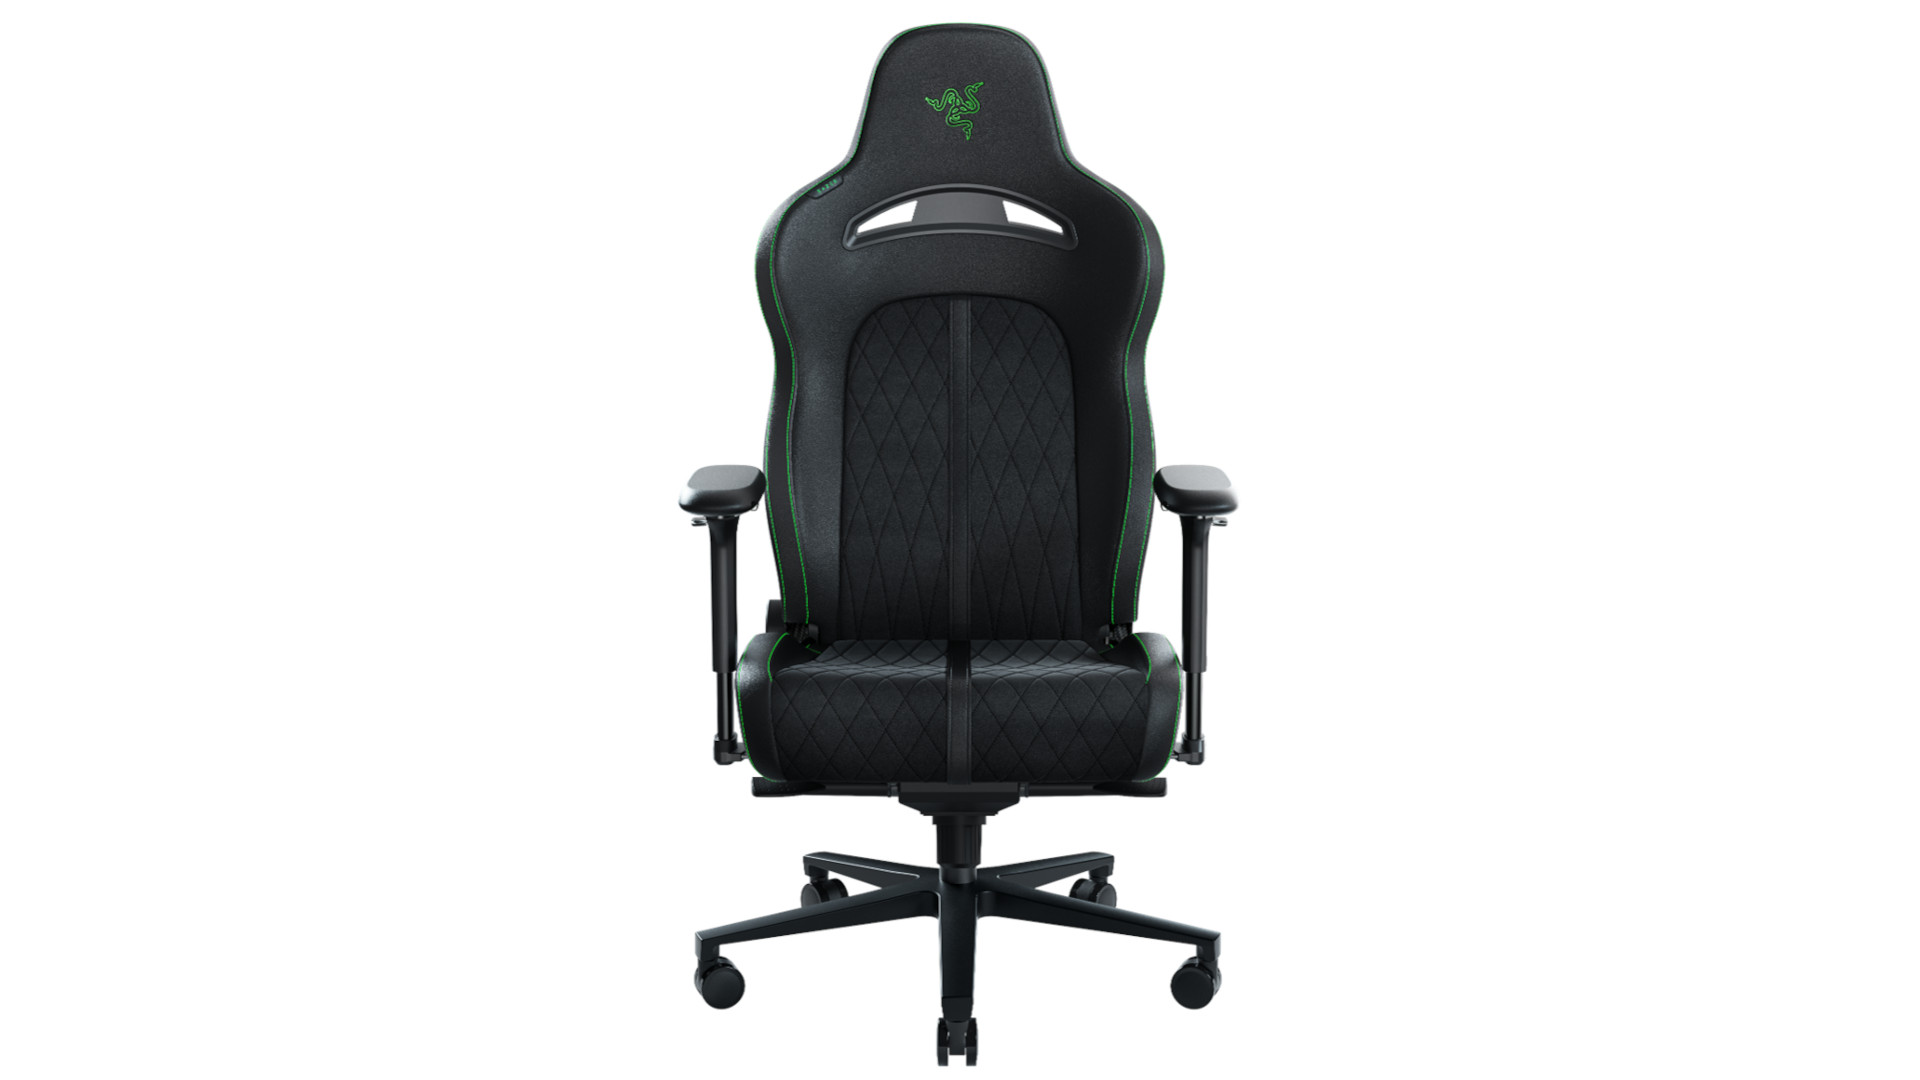 The Razer Enki Pro gaming chair